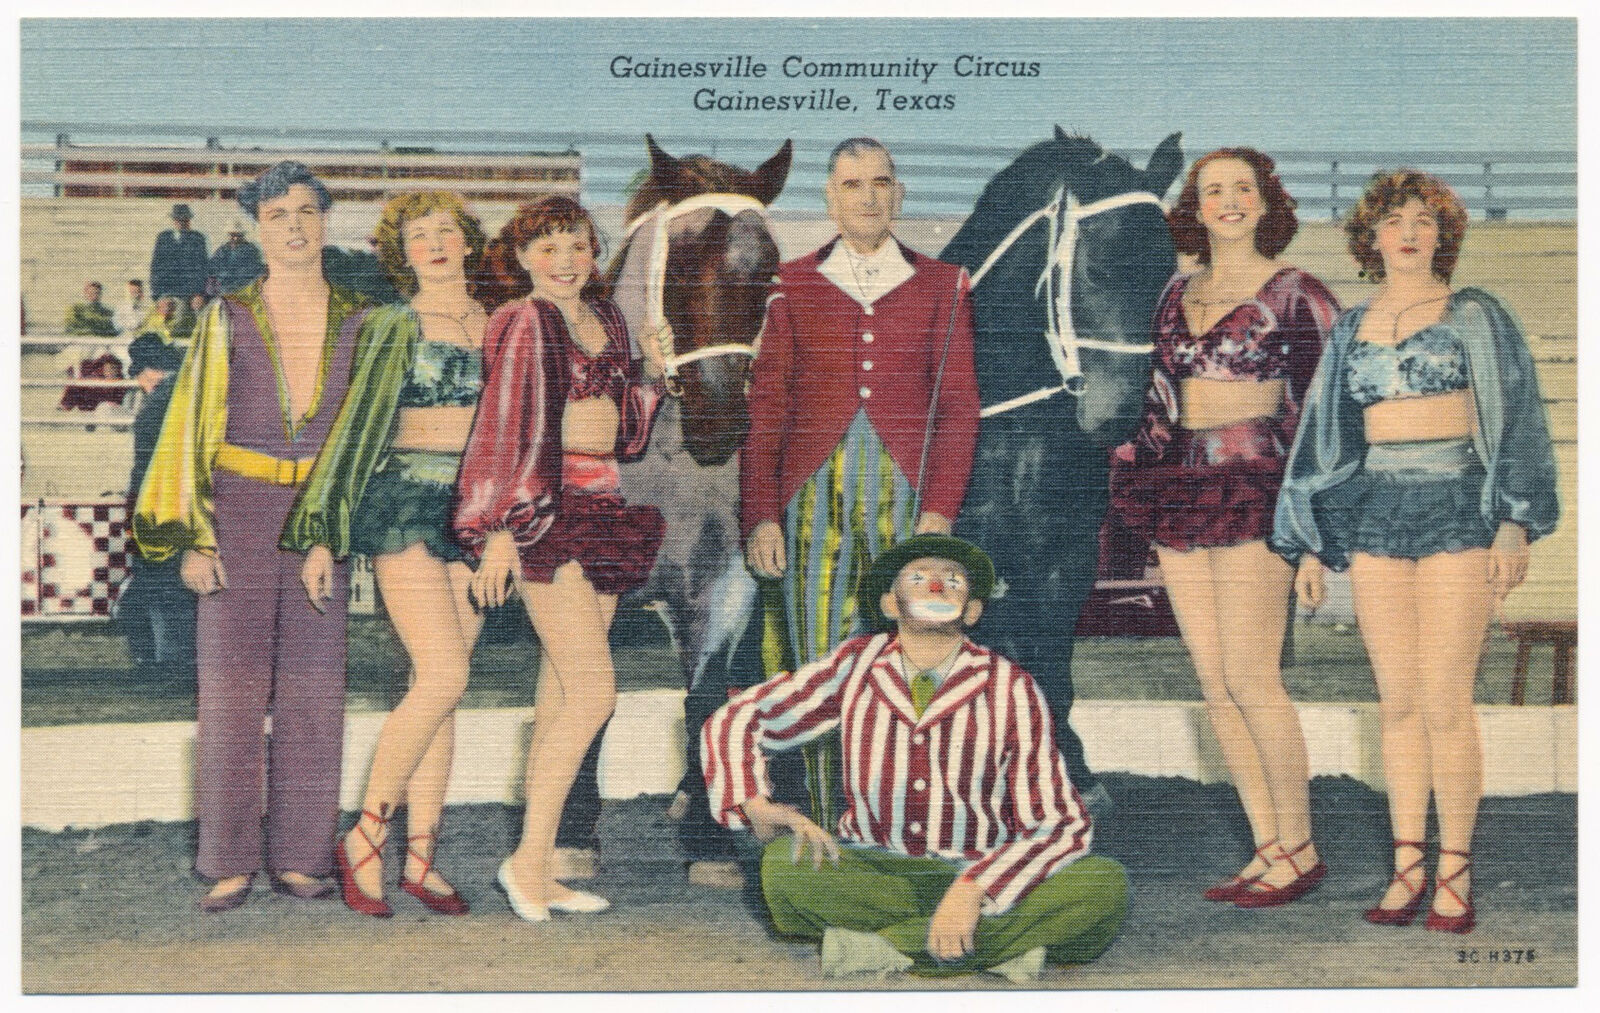 Gainesville Community Circus, Gainesville, Texas - 1950s